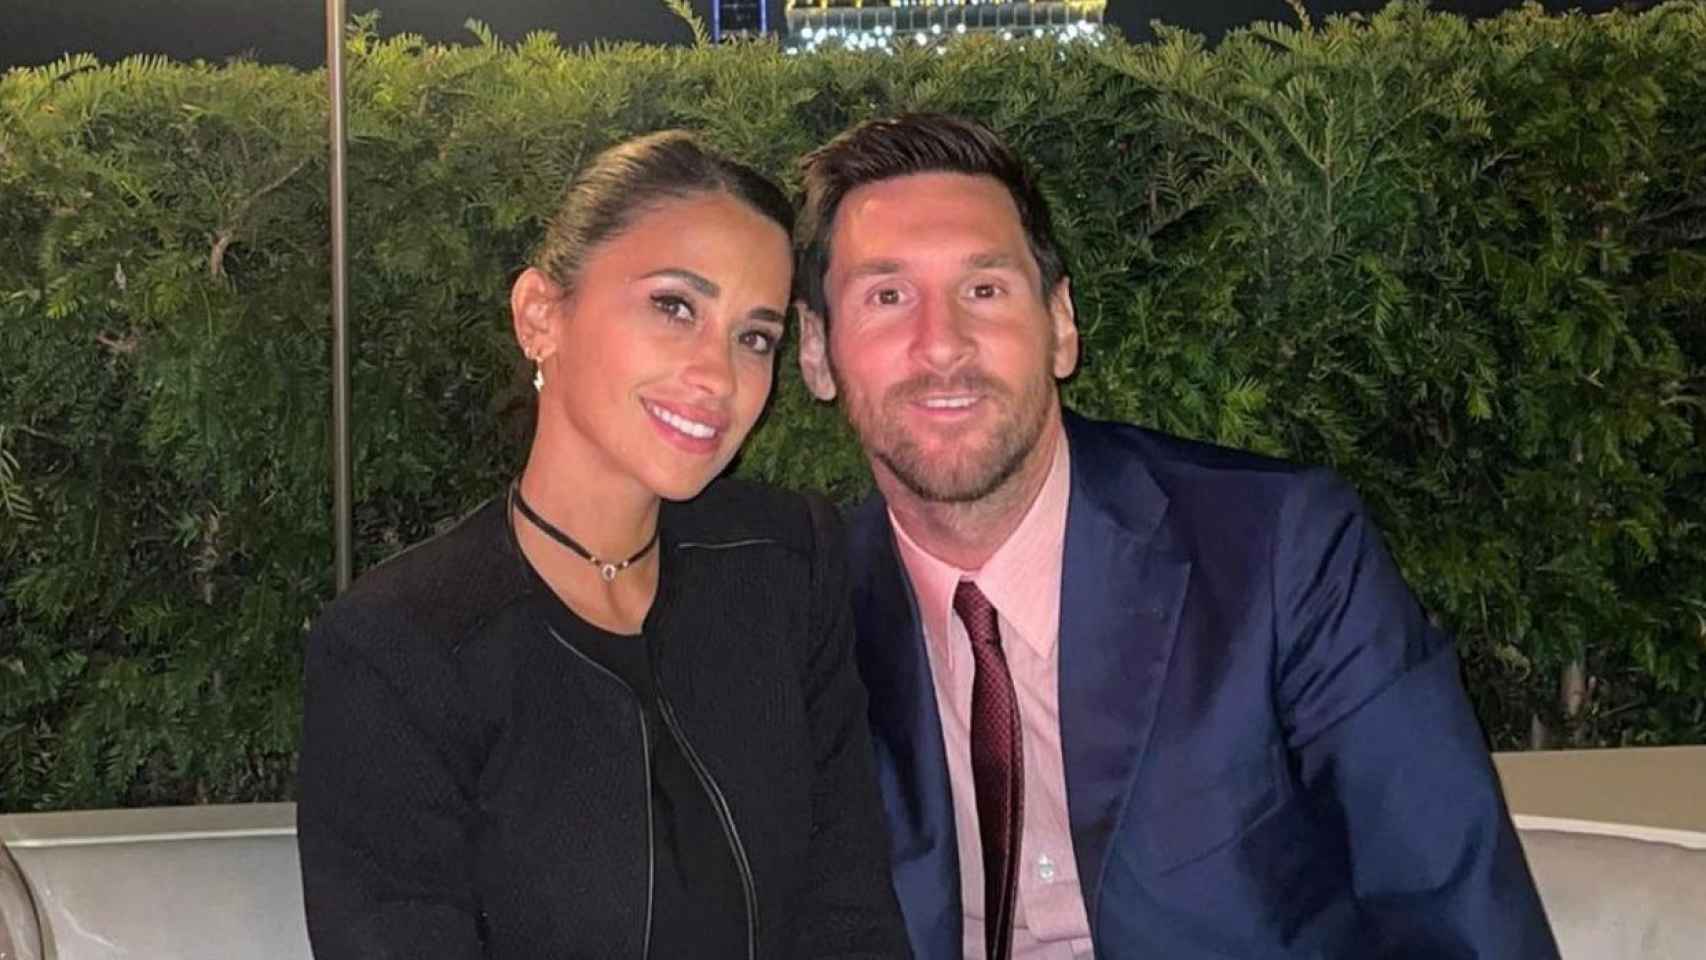 Antonella Roccuzz y Leo Messi cenando en París